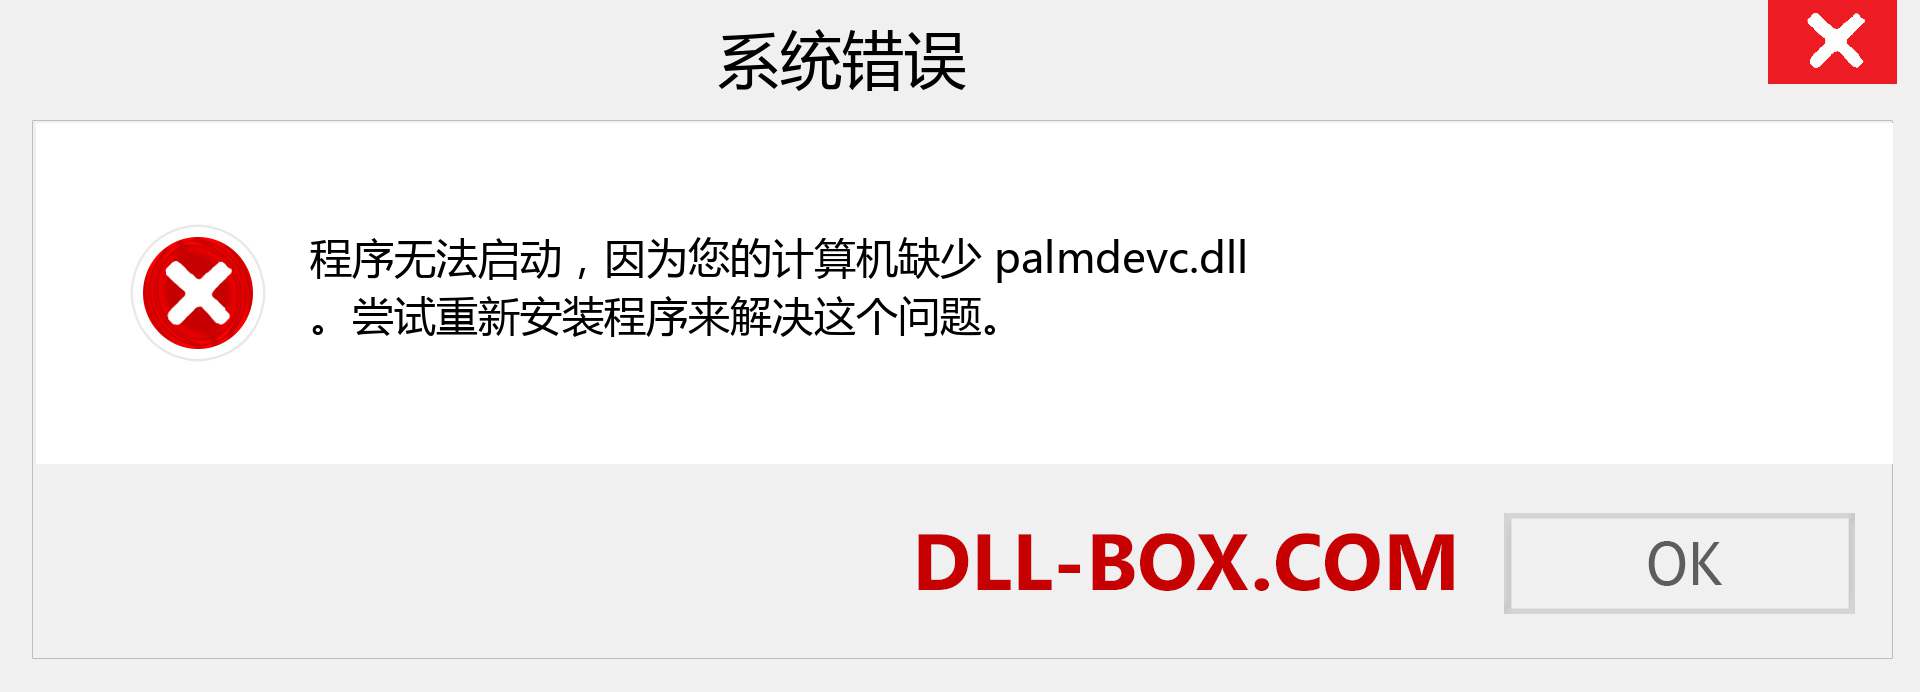 palmdevc.dll 文件丢失？。 适用于 Windows 7、8、10 的下载 - 修复 Windows、照片、图像上的 palmdevc dll 丢失错误